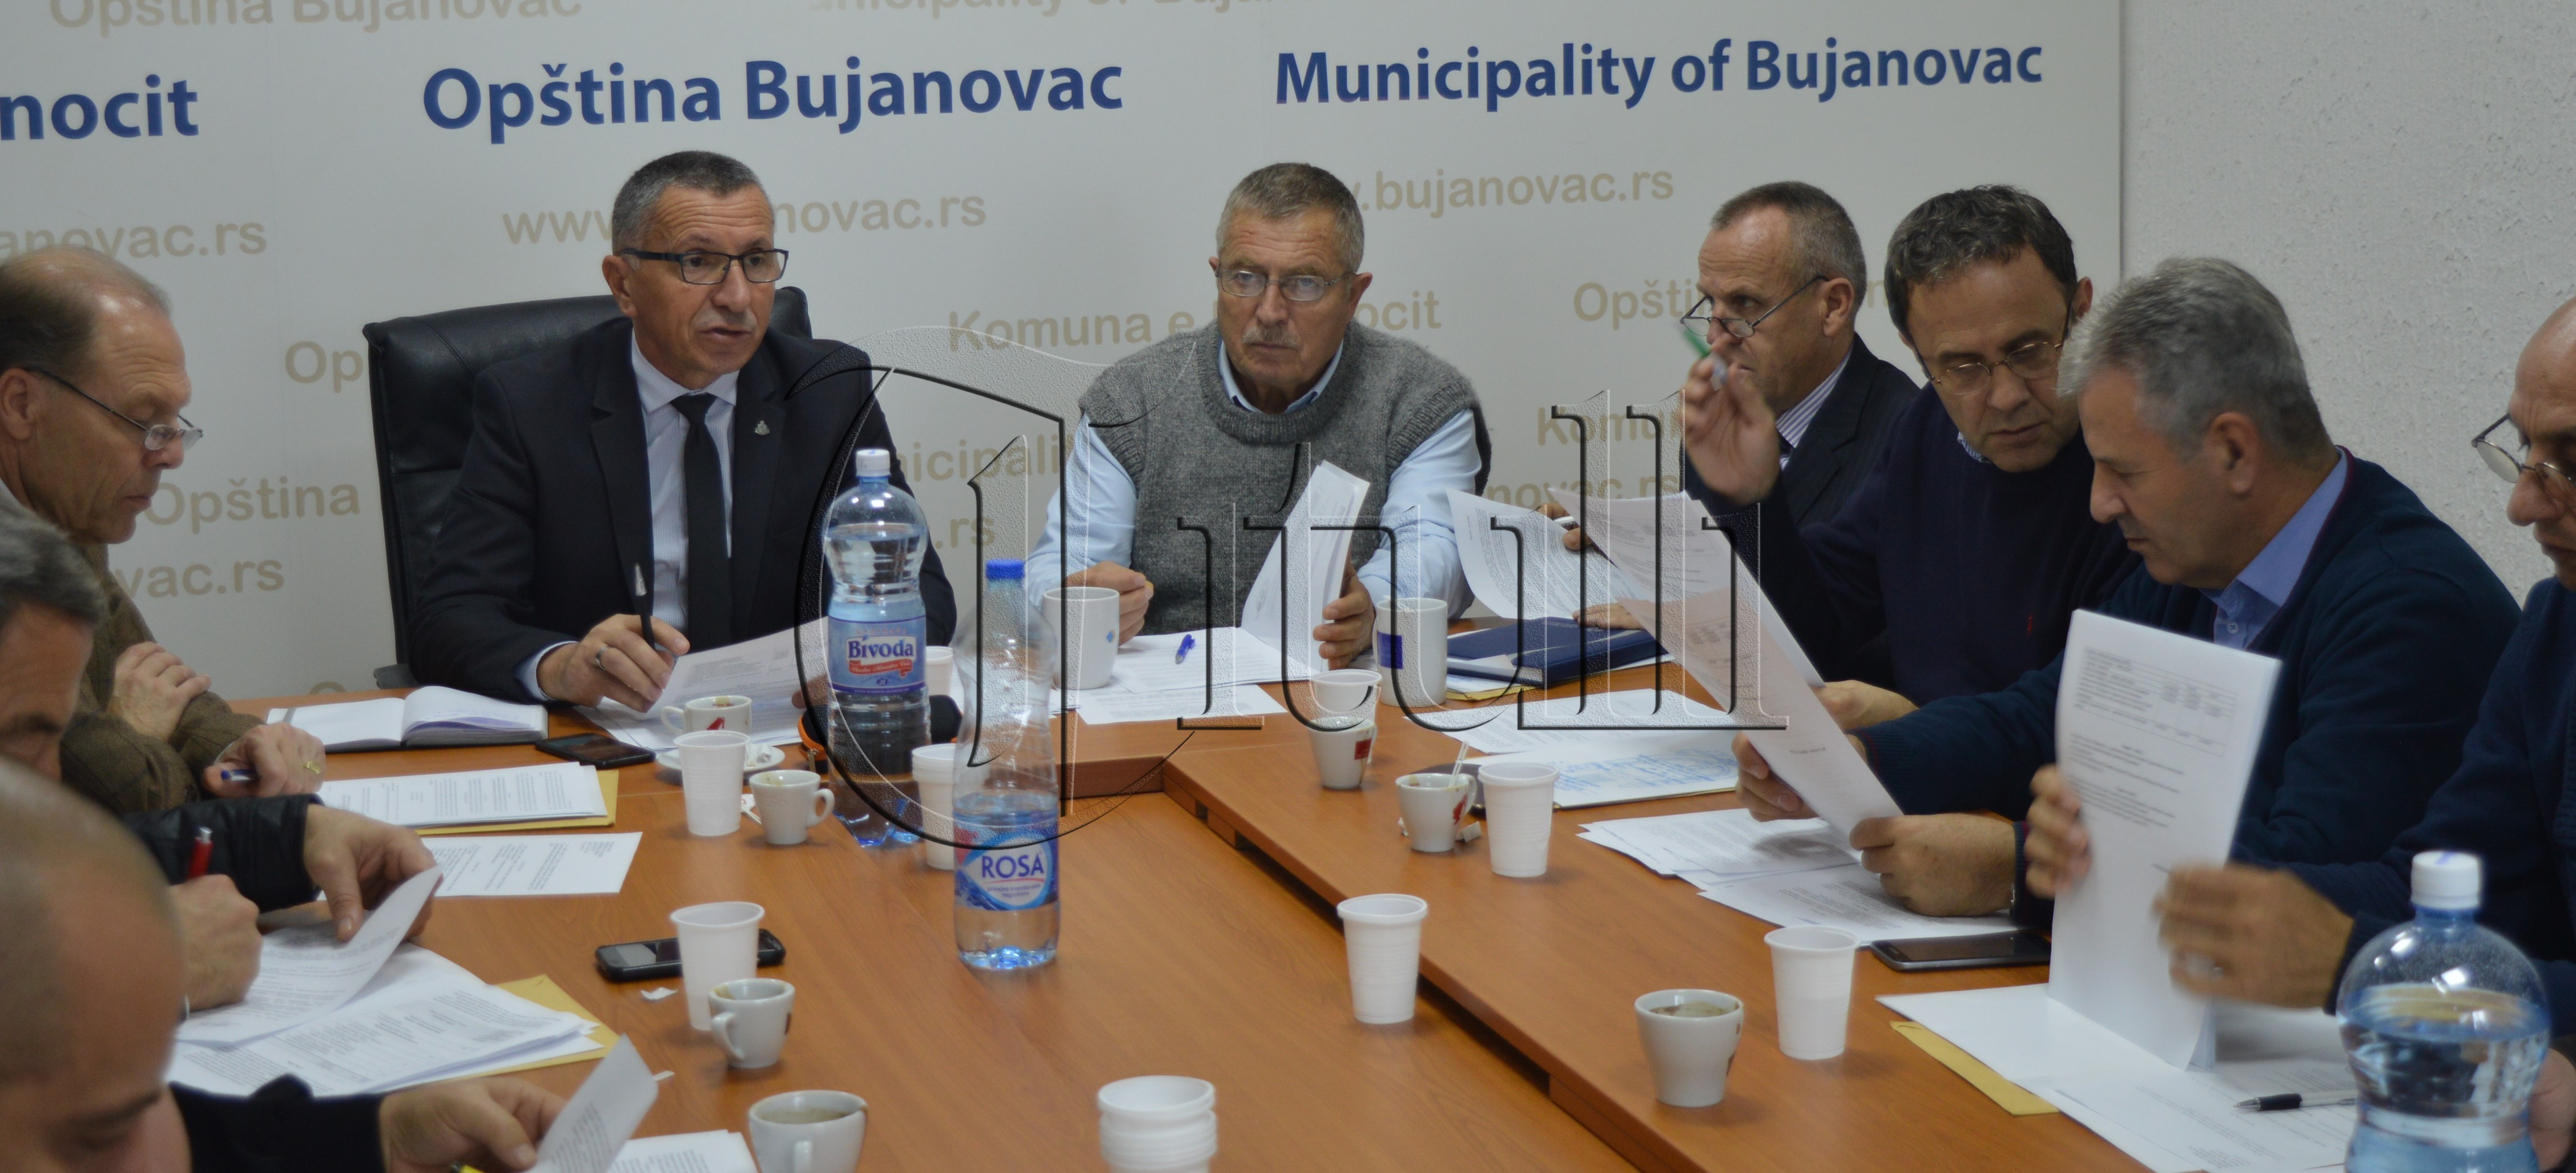 Komuna e Bujanocit me 40 punëtorë më pak, parakusht i Bashkimit Evropian